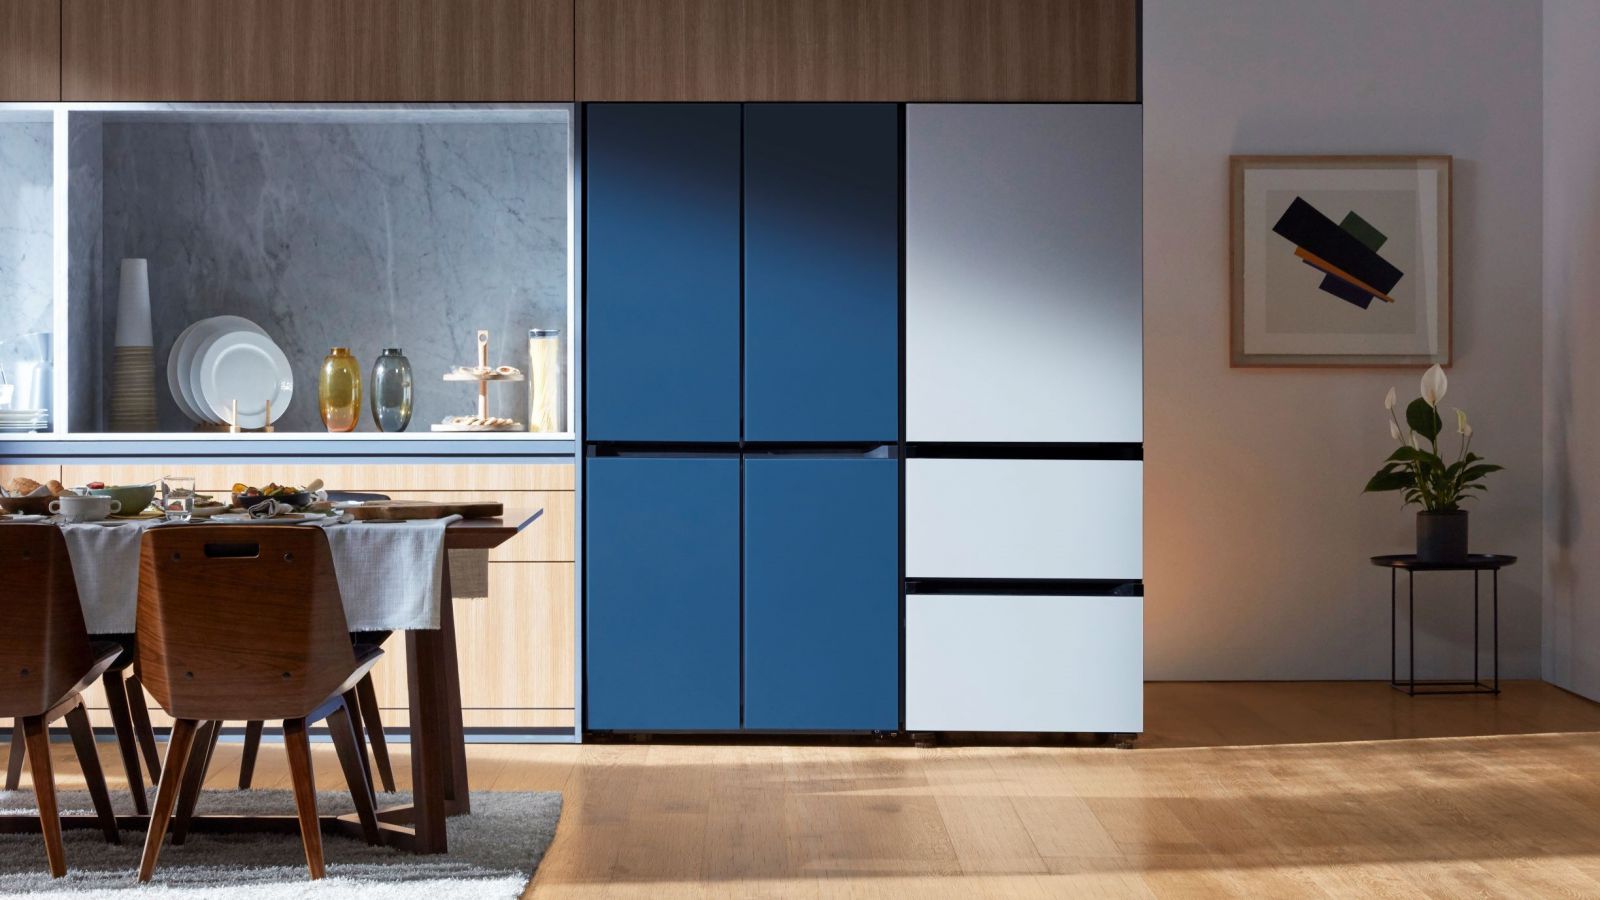 Dòng tủ lạnh Bespoke - vì một không gian nhà ở thông minh, linh hoạt và hiện đại